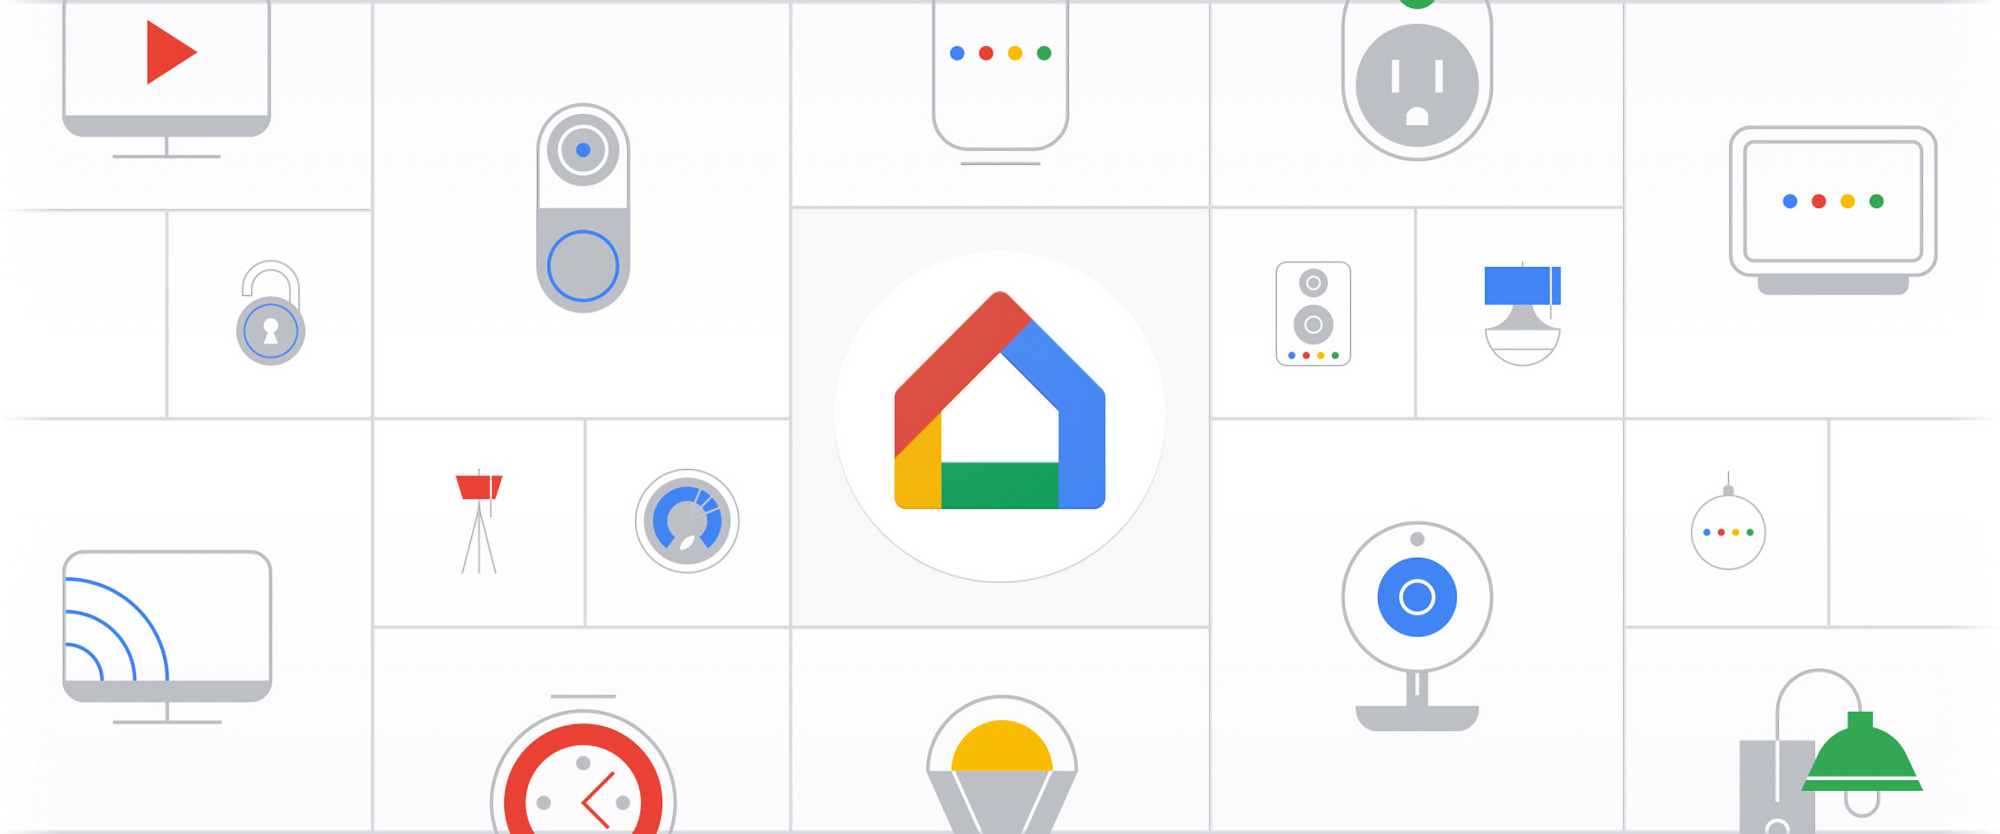 Rozpoczynają się testy nowej aplikacji Google Home. Nadchodzą długo wyczekiwane zmiany